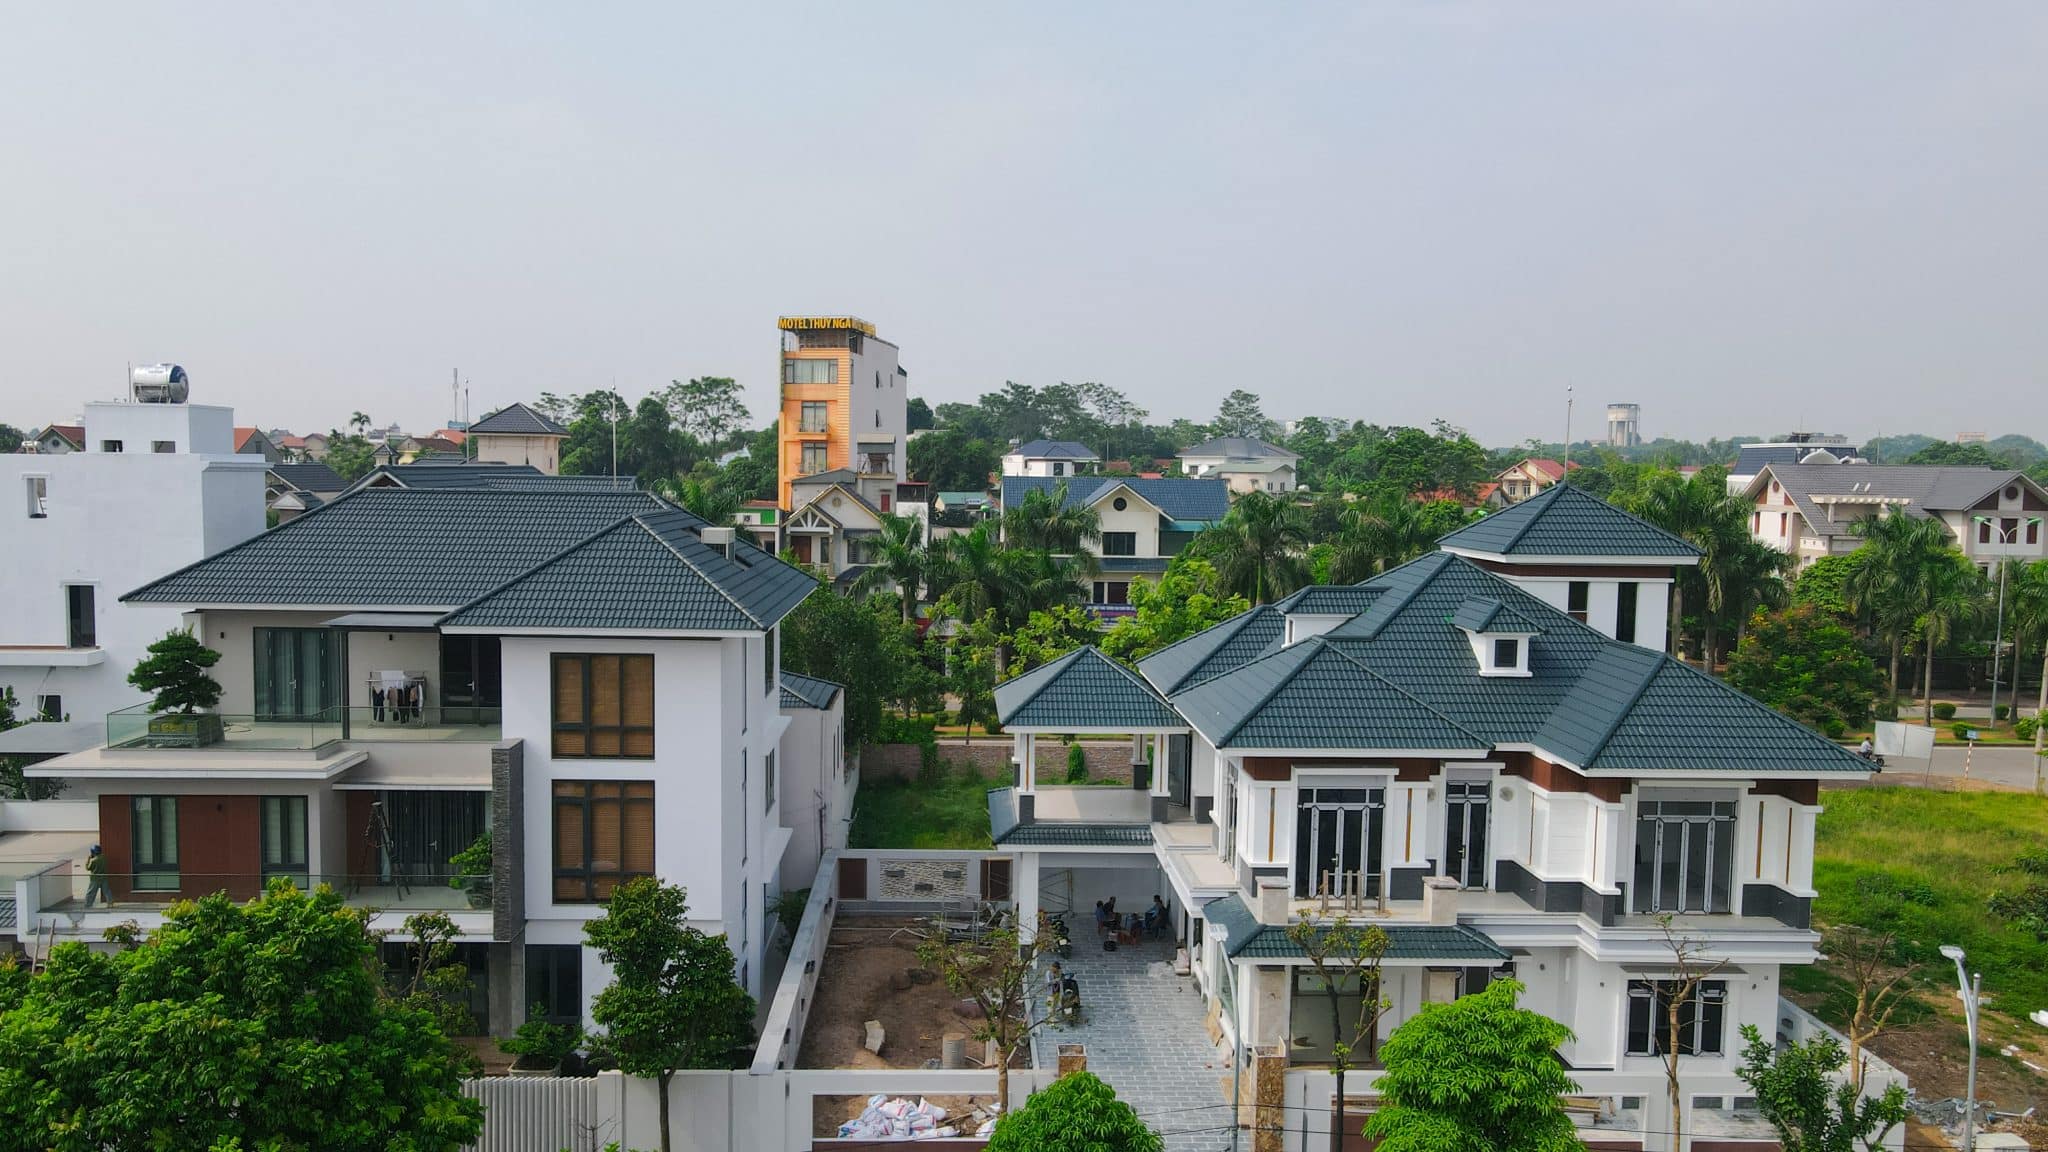 Kiểu nhà phố mái nhật sử dụng ngói màu shinko có khác biệt hoàn toàn so với những ngôi nhà xung quanh khu vực